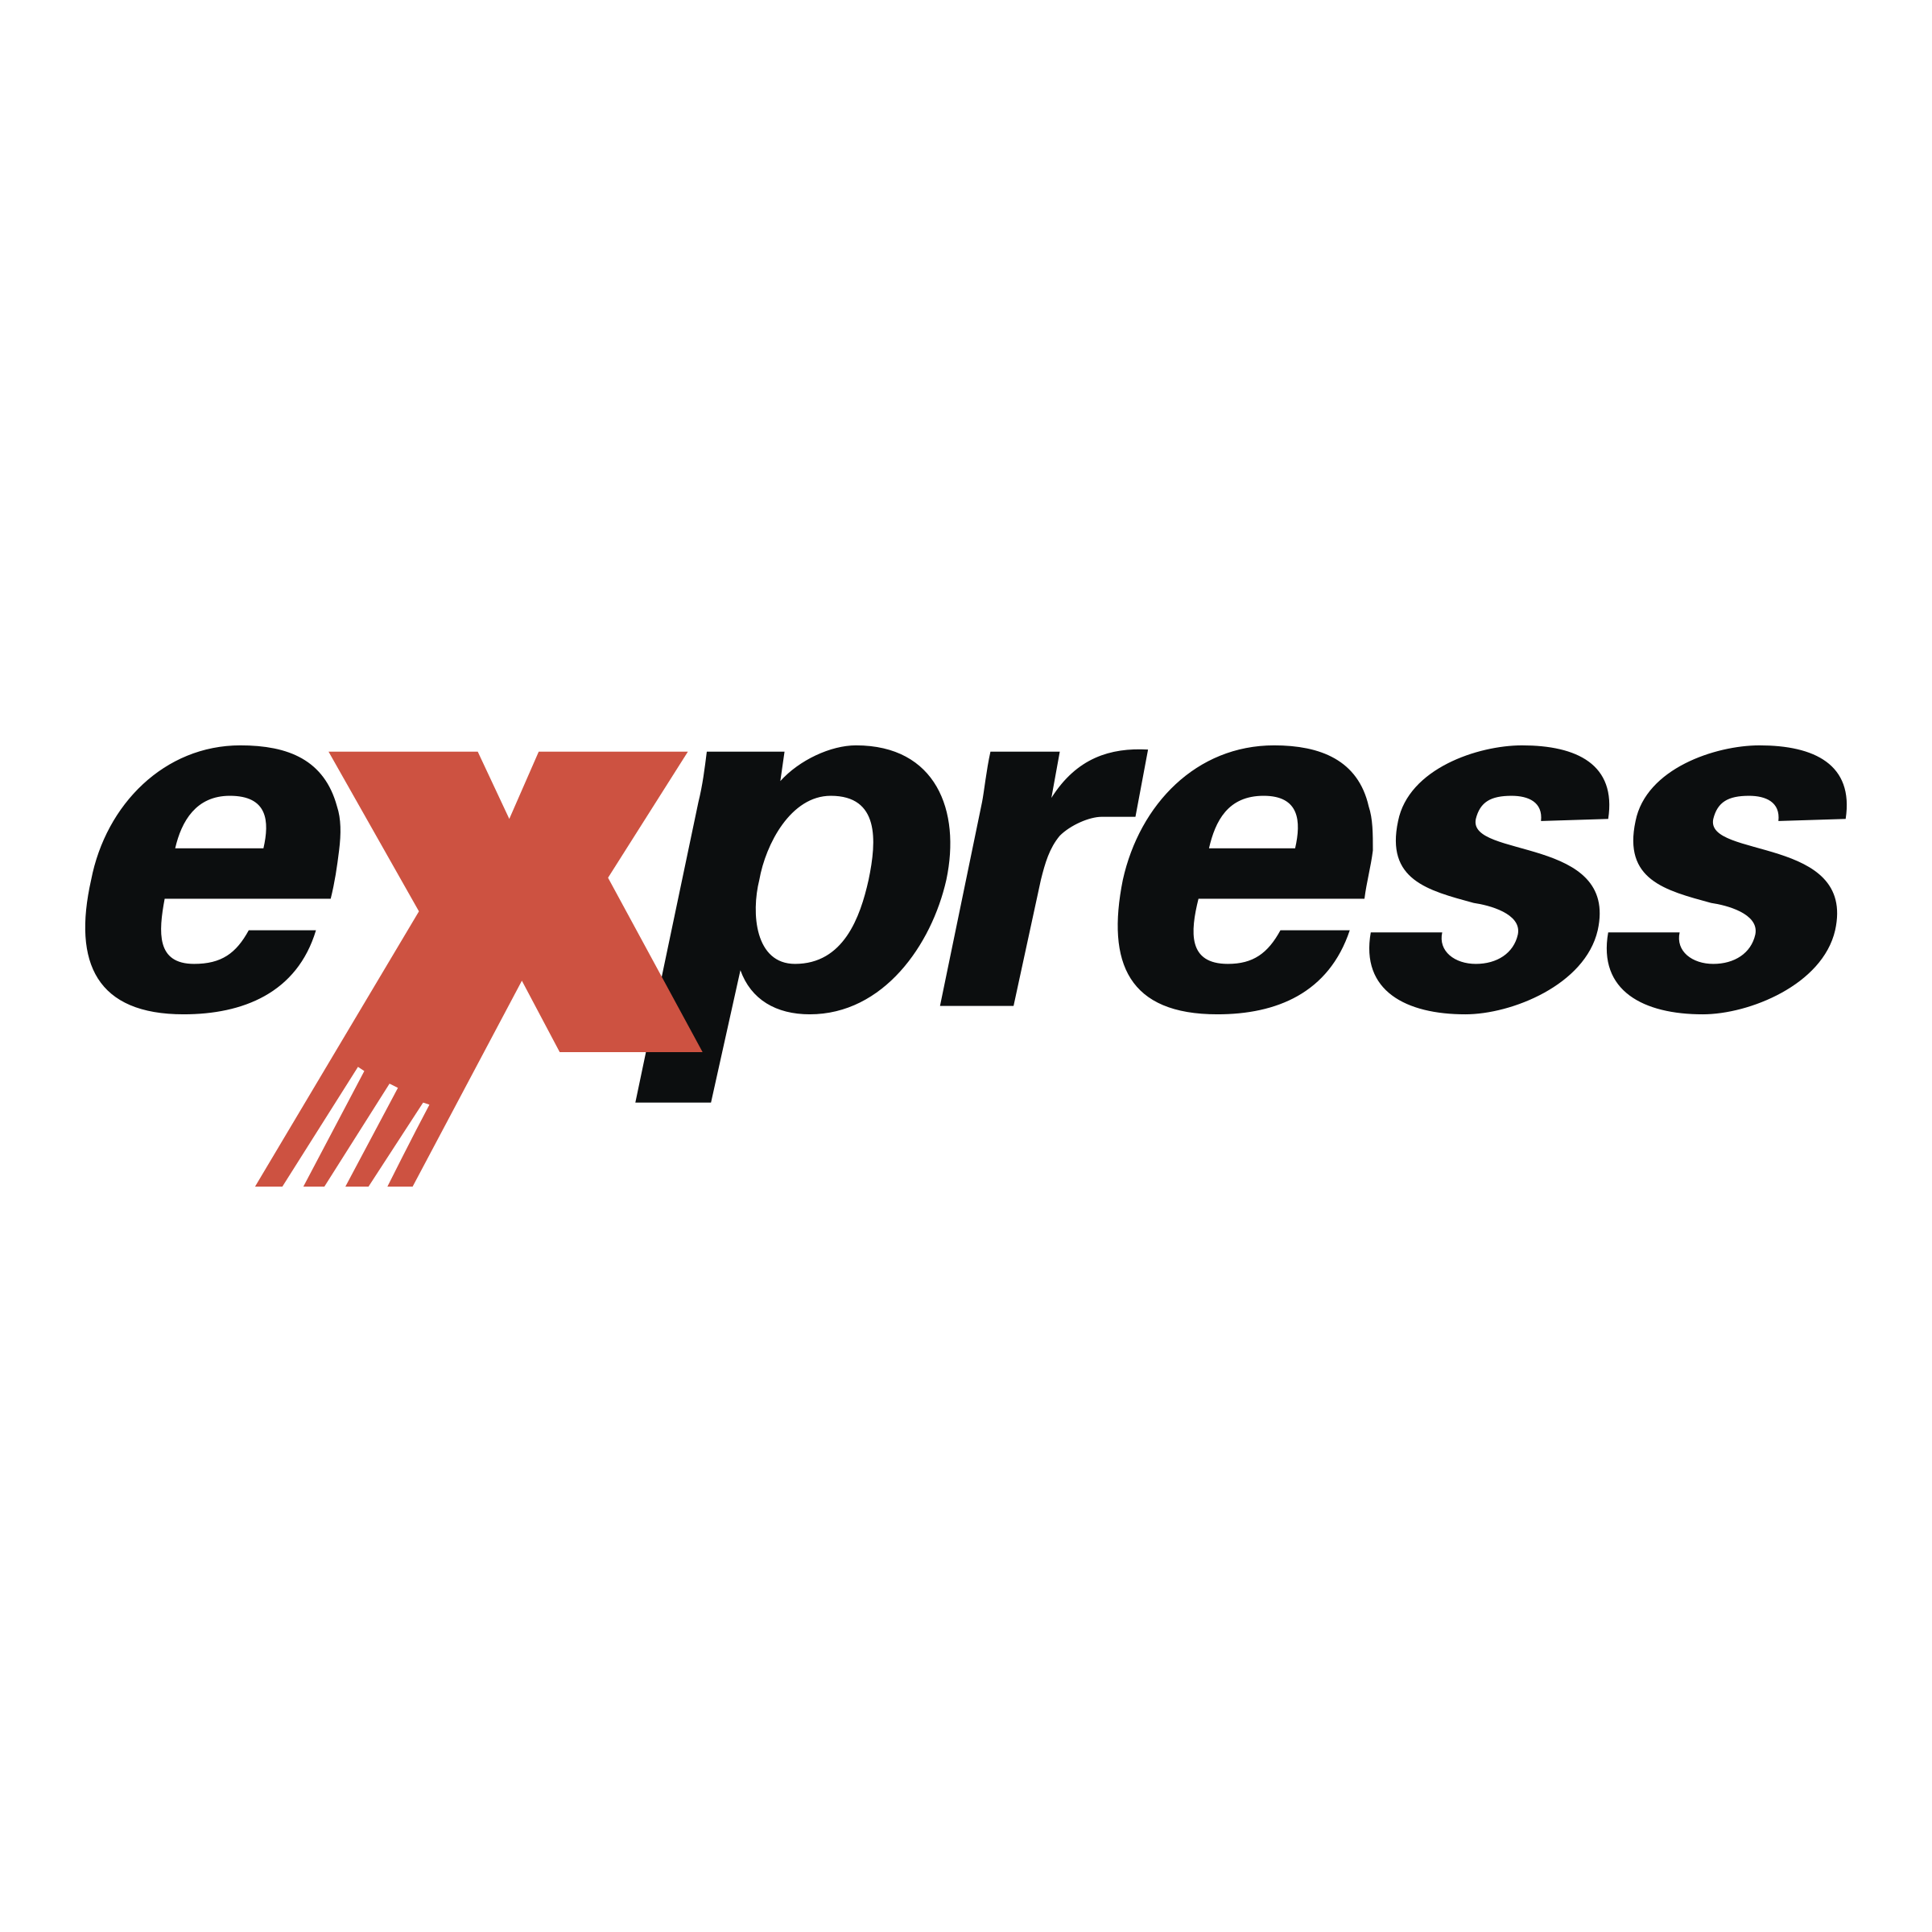 Экспресс мессенджер ржд. Экспресс логотип. Express надпись. Xpress логотип. Слово экспресс на прозрачном фоне.